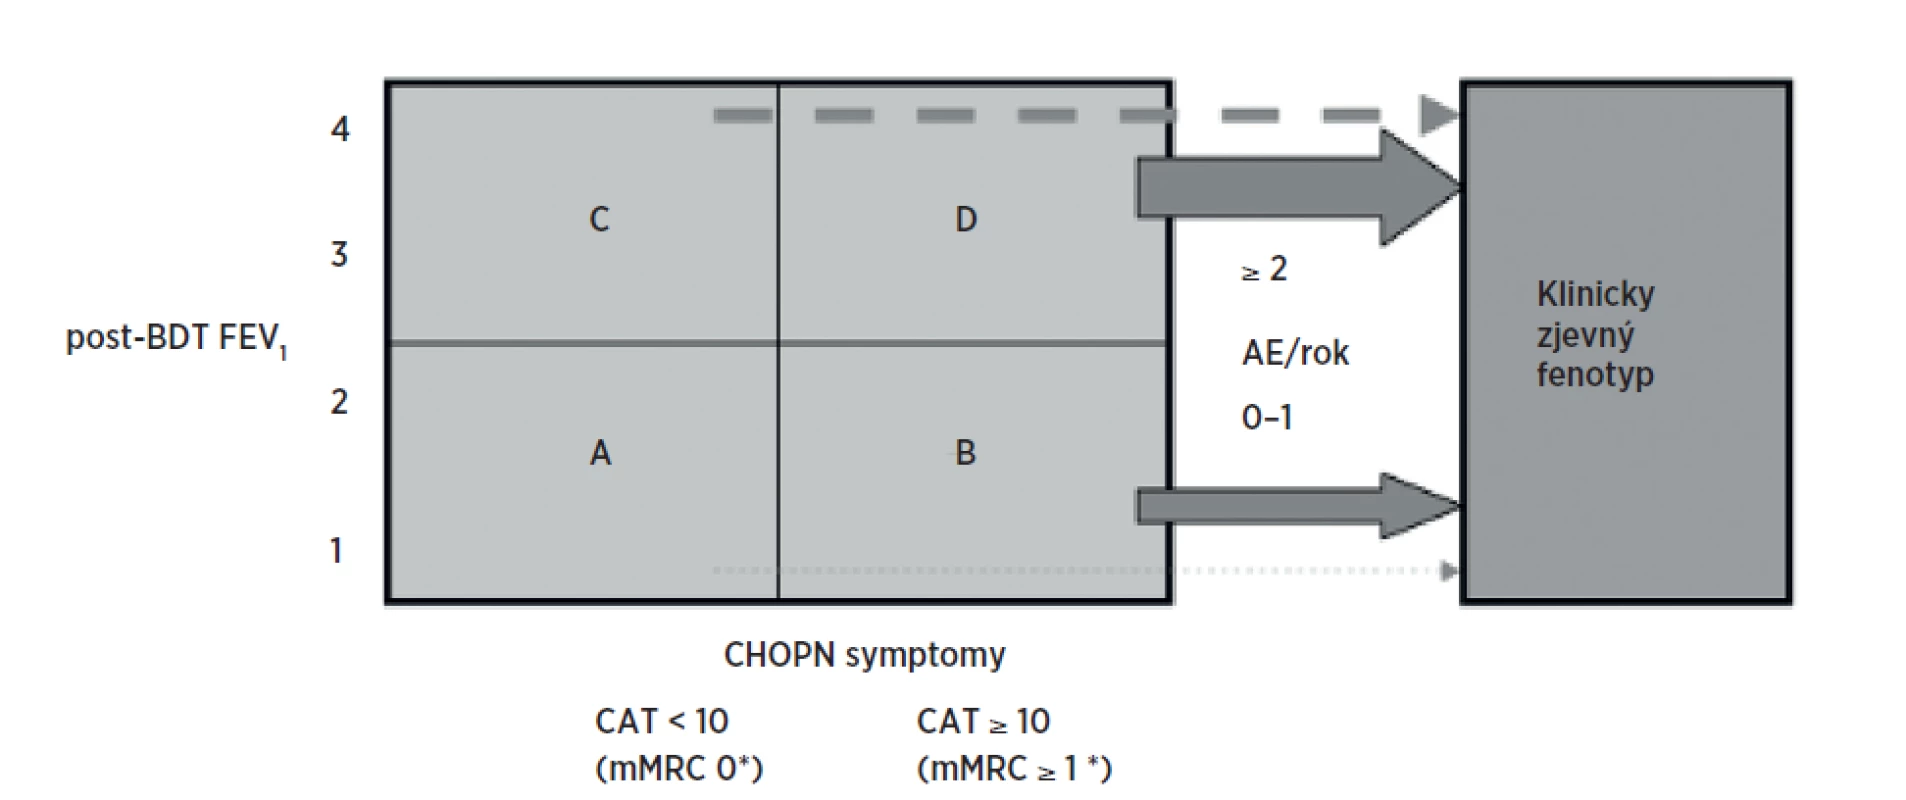 Klasifikace CHOPN podle kategorií (A–D) a její využití pro pátrání podle fenotypu
